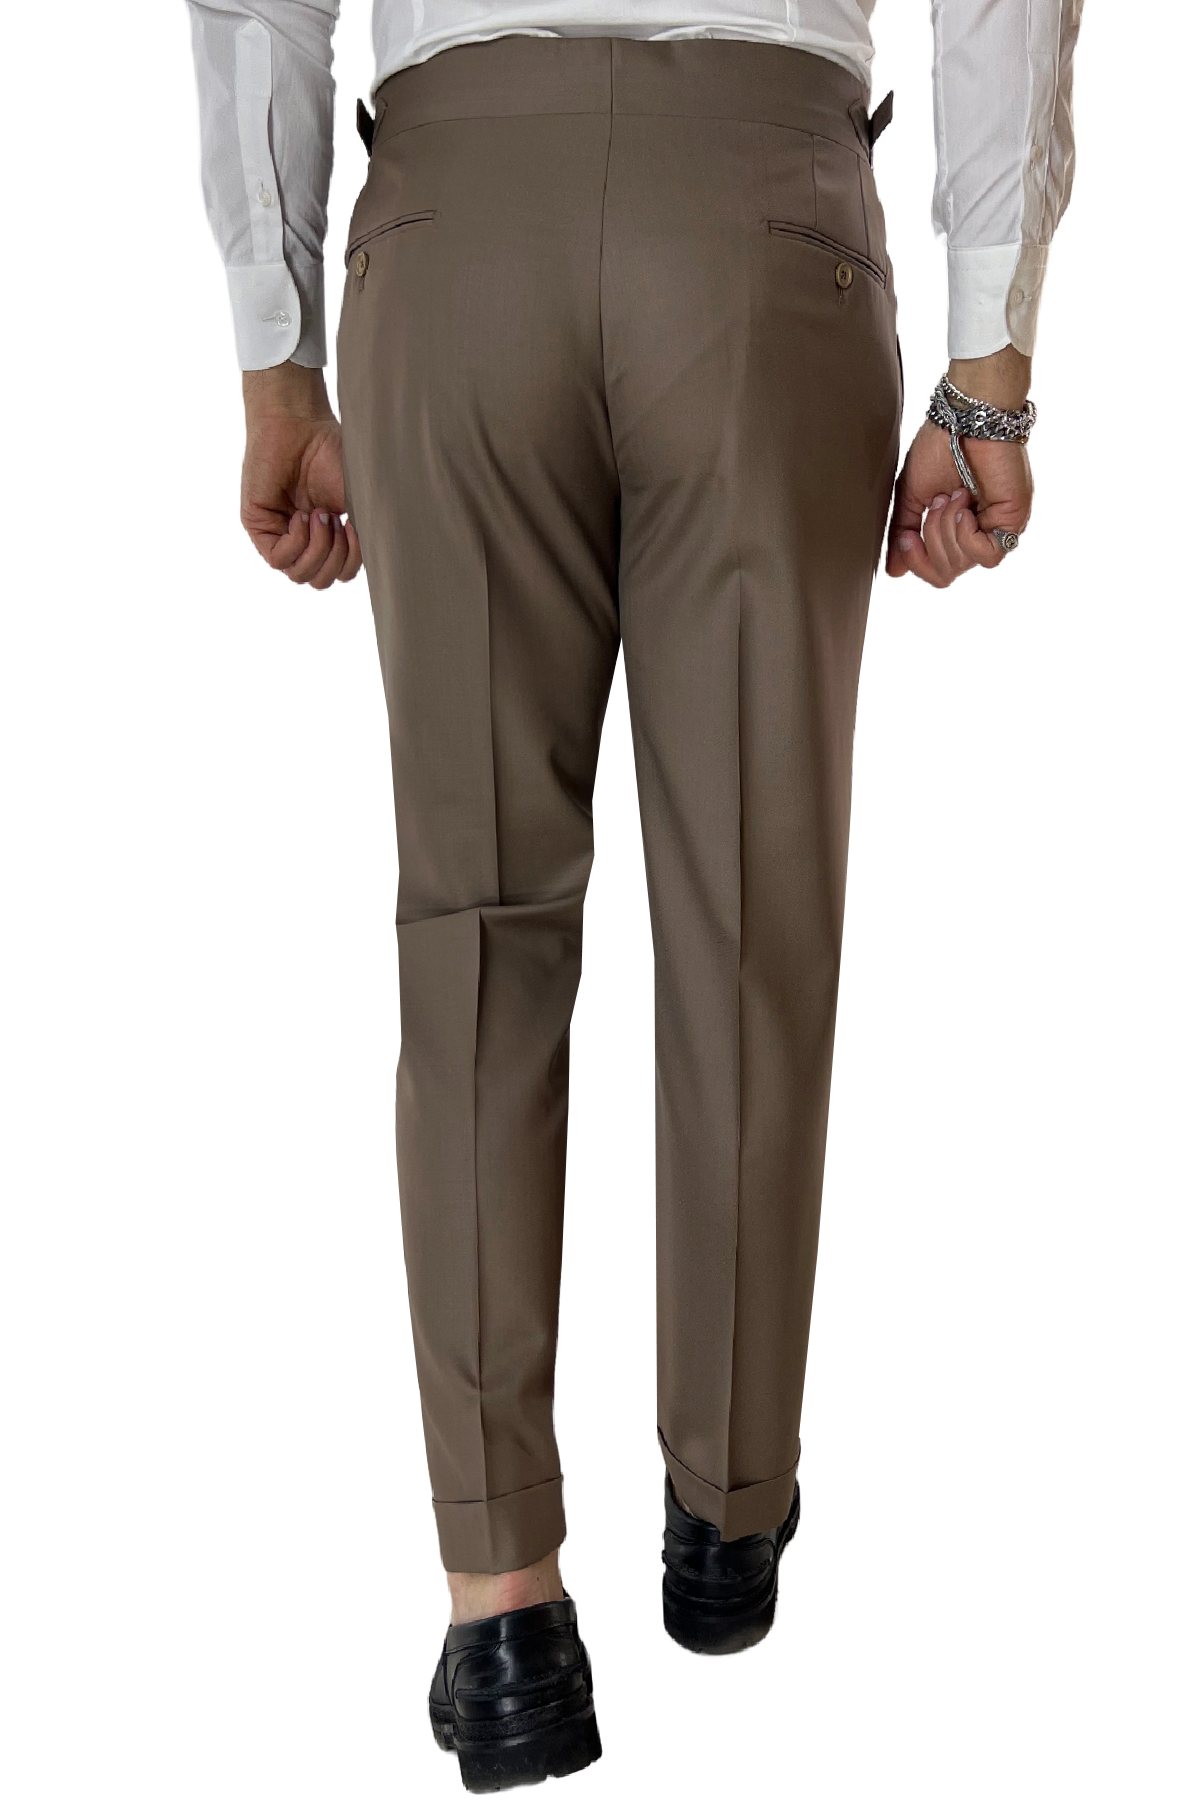 Pantalone uomo fango vita alta tasca america in fresco lana 100% Vitale Barberis Canonico fibbie laterali e risvolto 4cm